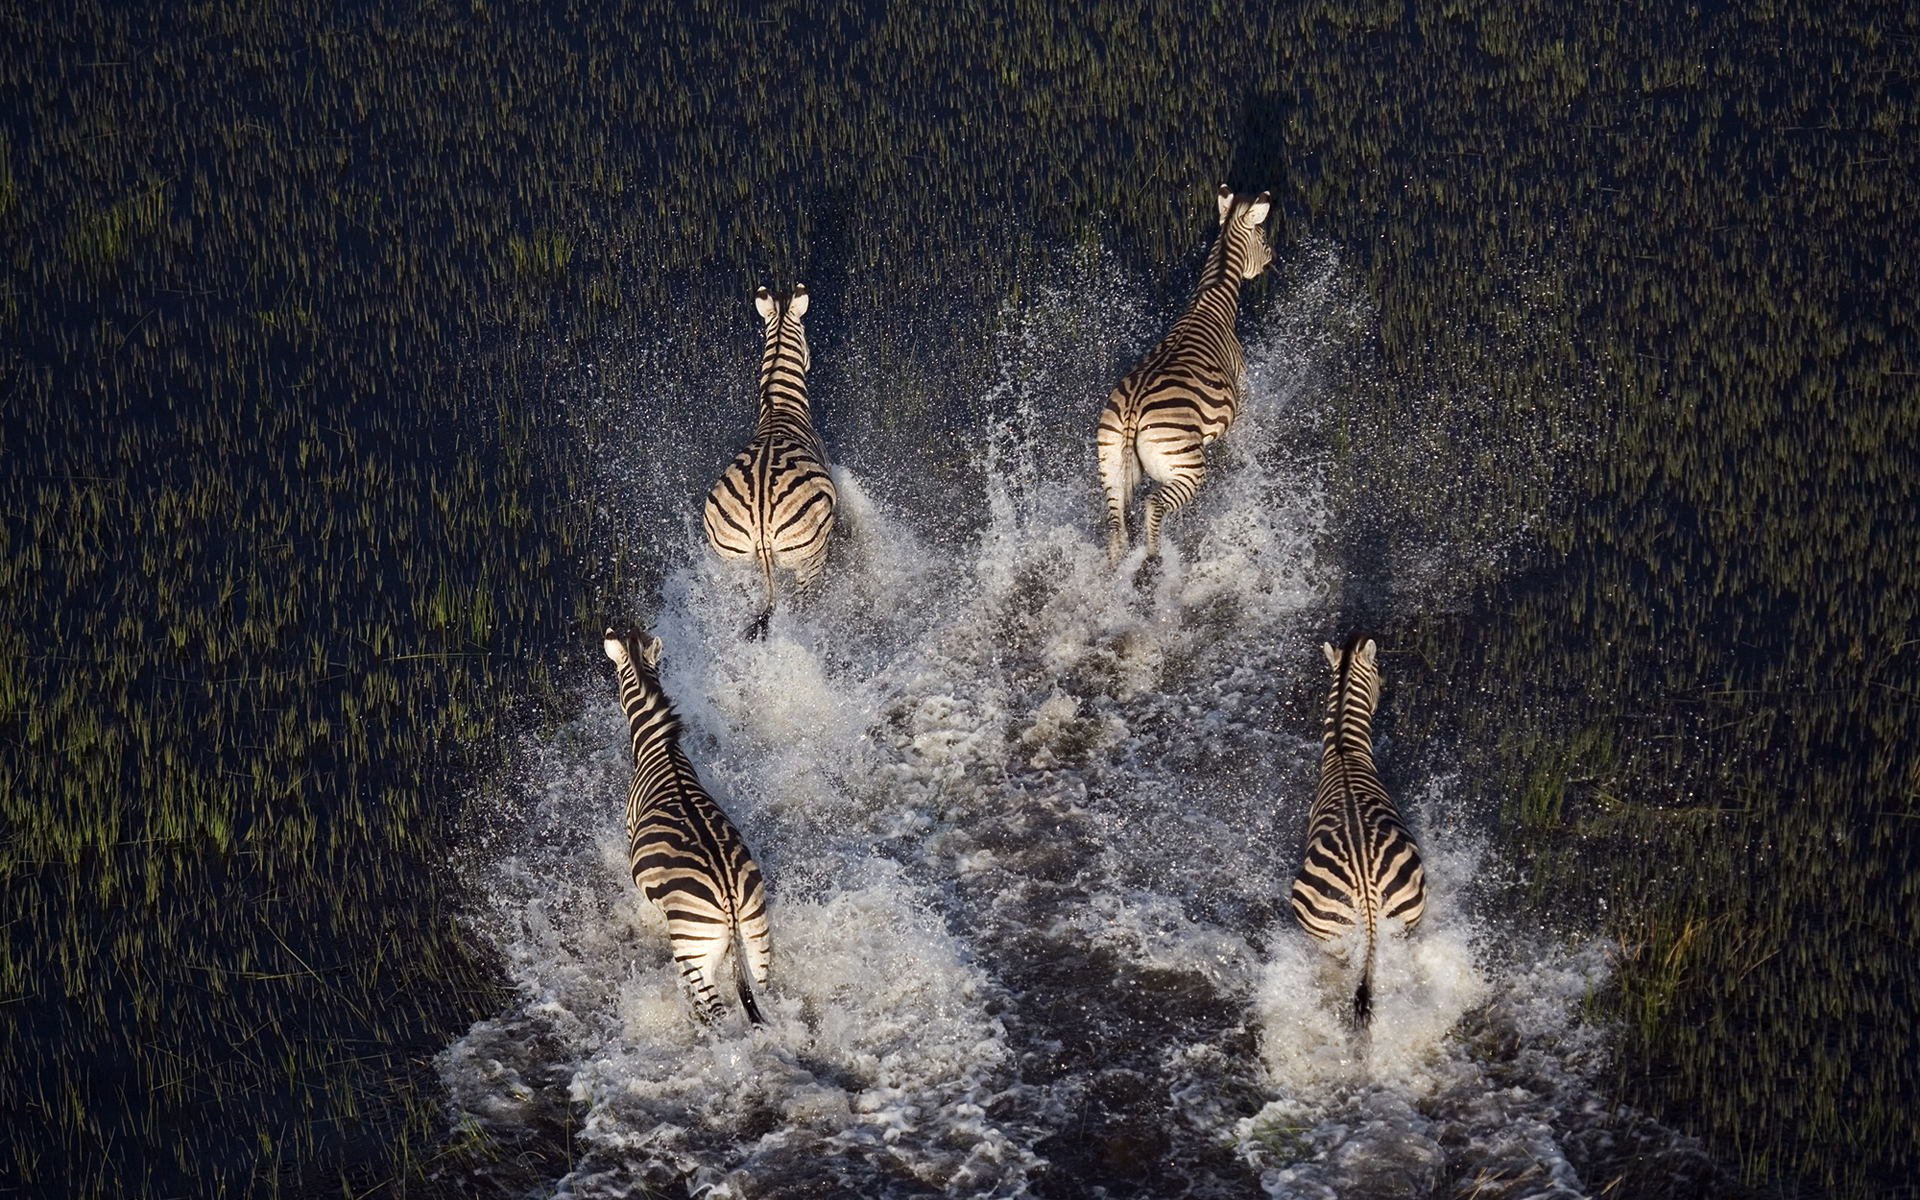 zwierzęta zebry bagno rośliny woda przyroda